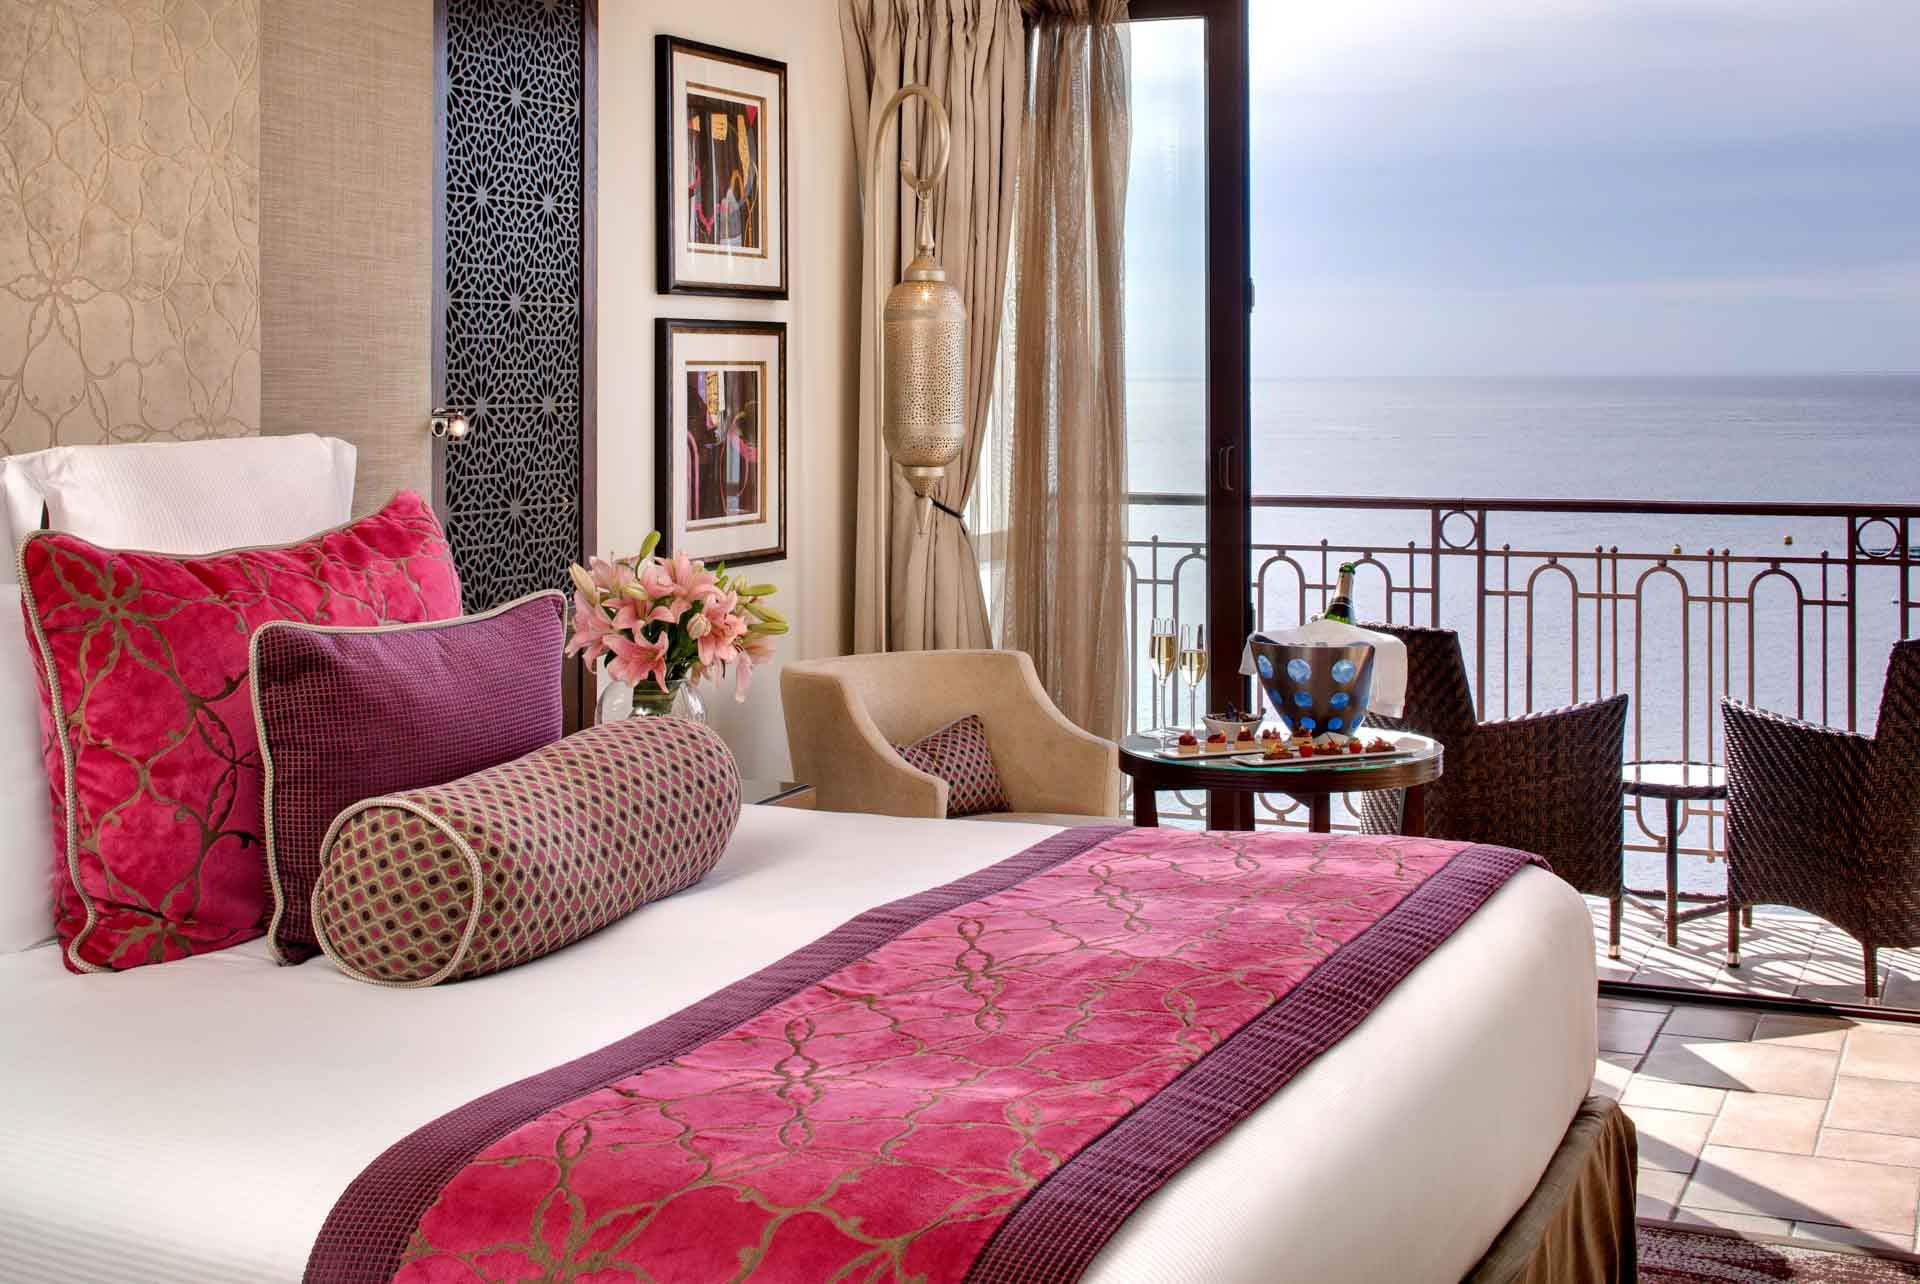 Hôtel Tiara Miramar - Chambre Deluxe avec vue sur la mer © DR